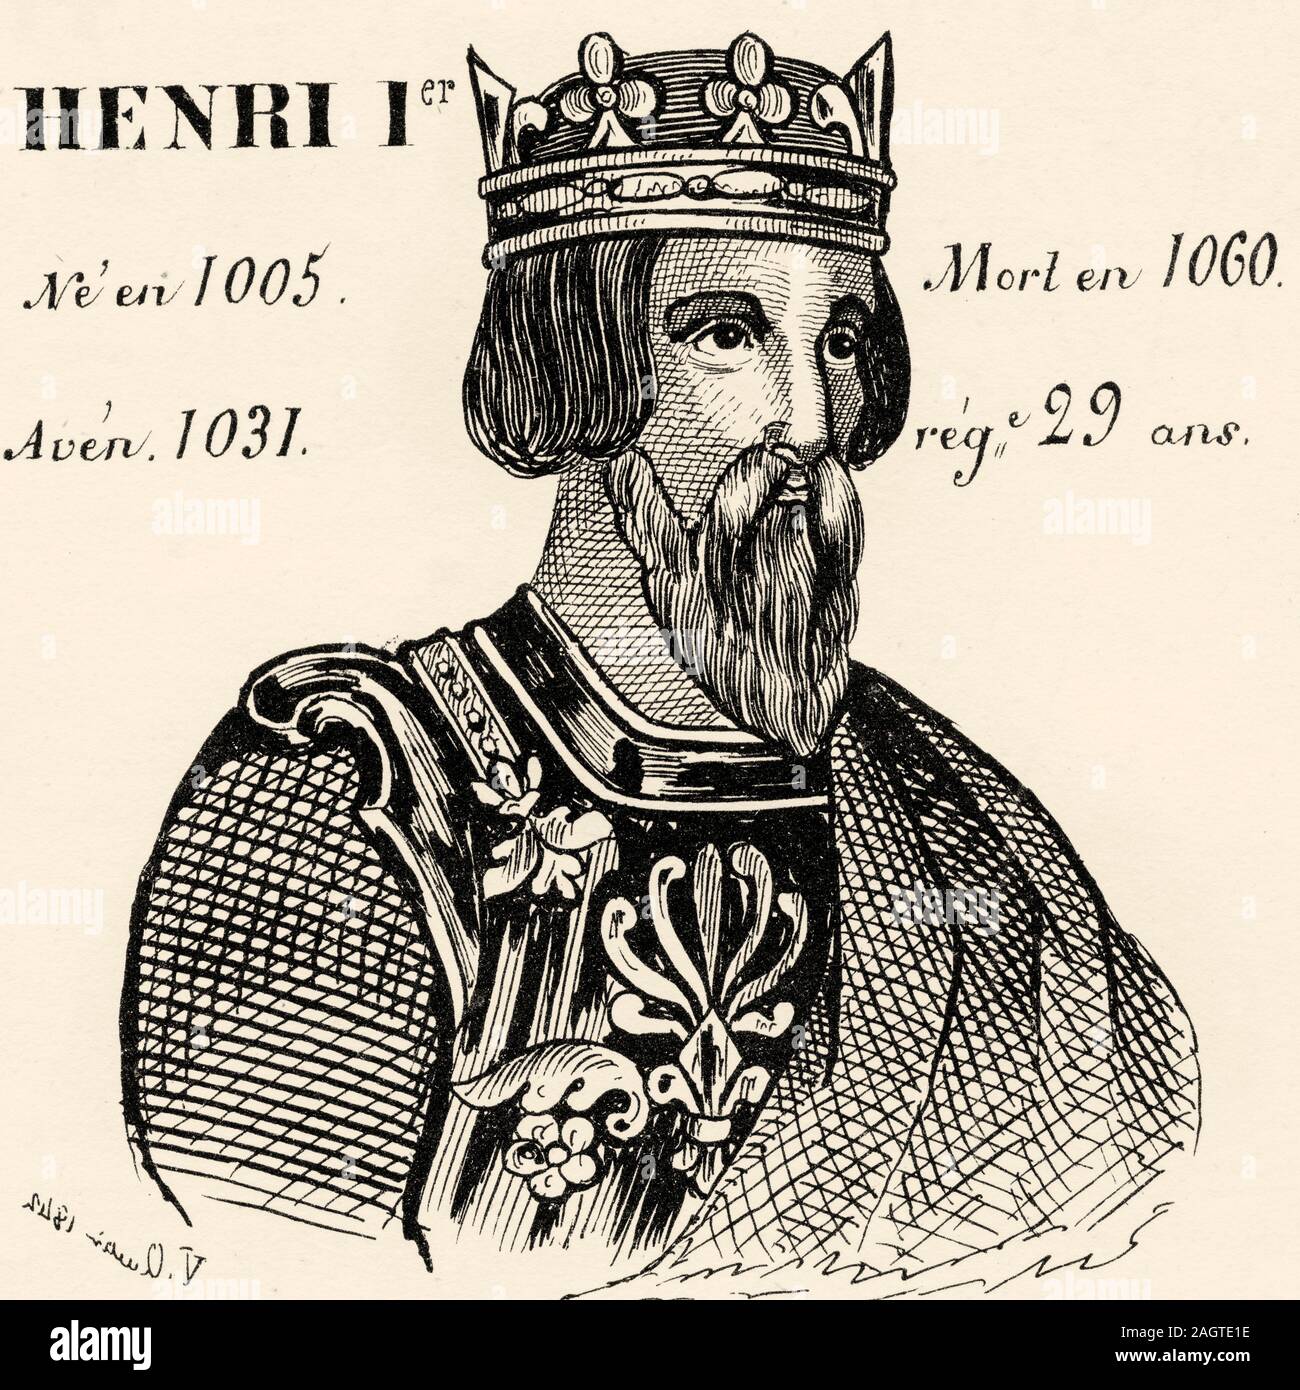 Retrato de Henri I (1005 - 1060). El rey de Francia desde 1031 a 1060. Casa de Capet, Capetos directos o Casa de Francia. Historia de Francia, desde el Foto de stock